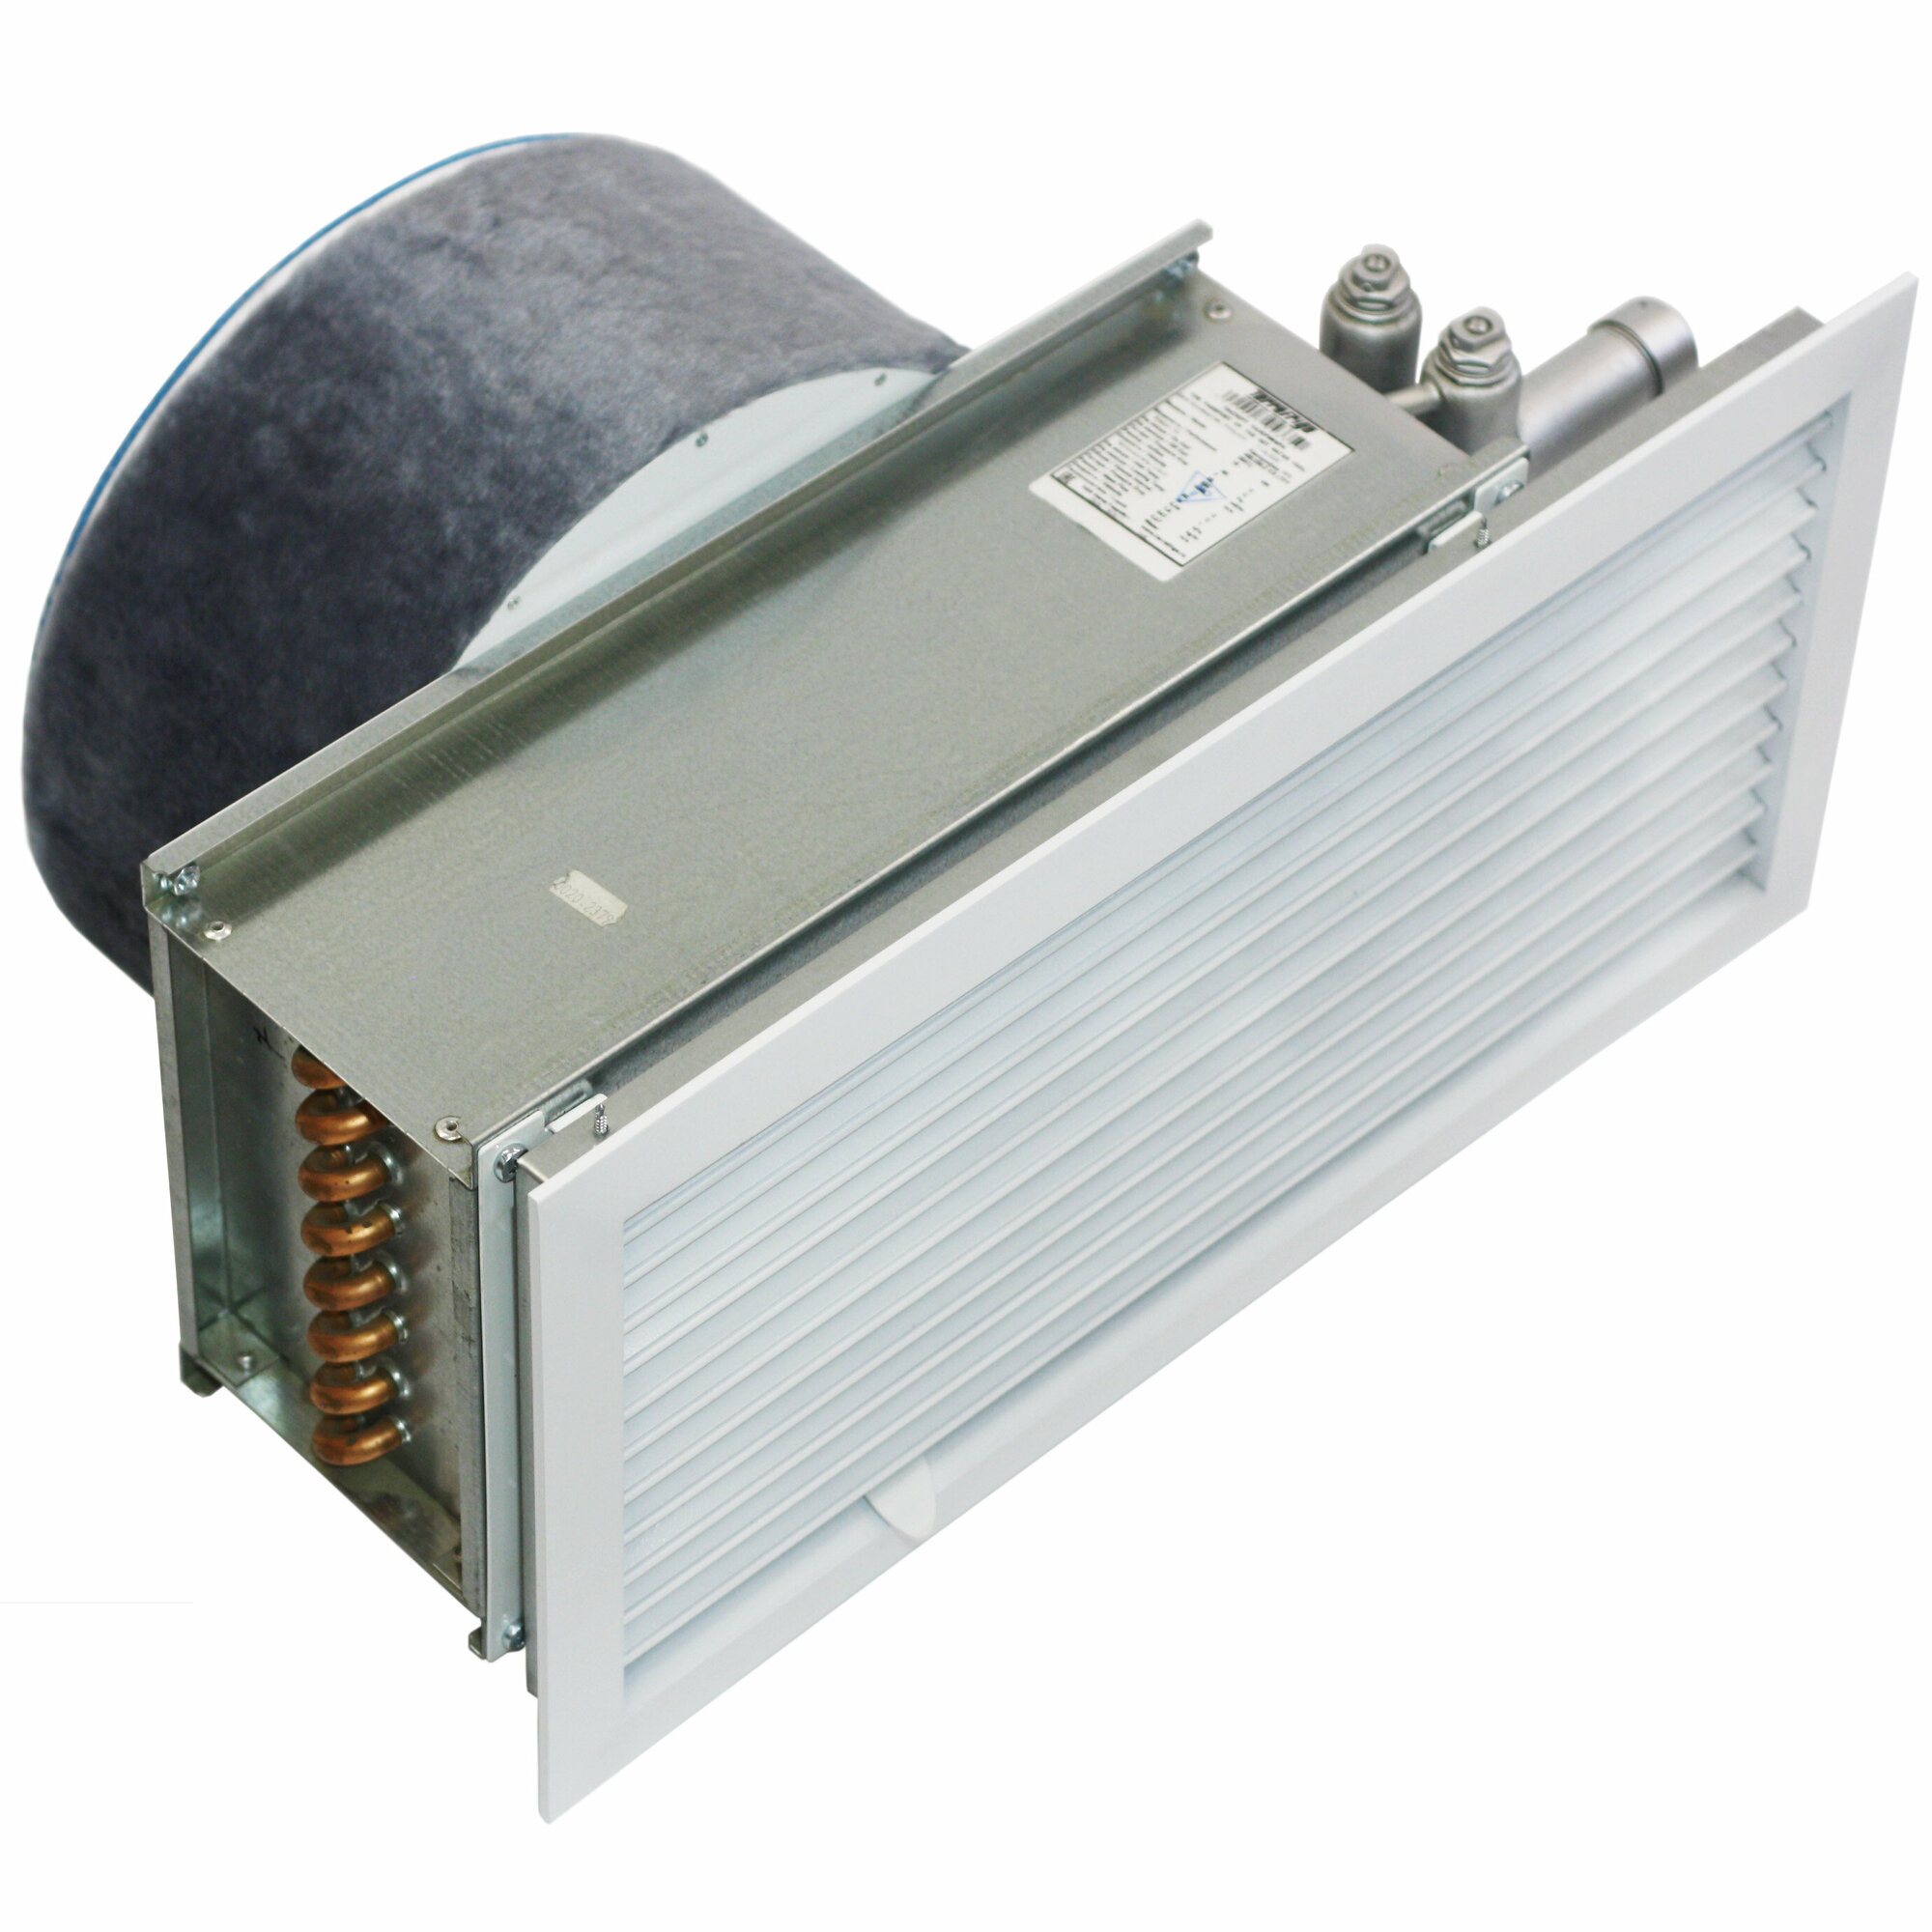 Клапан приточной вентиляции «Овен 315-ВНТ» (212 м³/час) с водяным и электрическим нагревателями